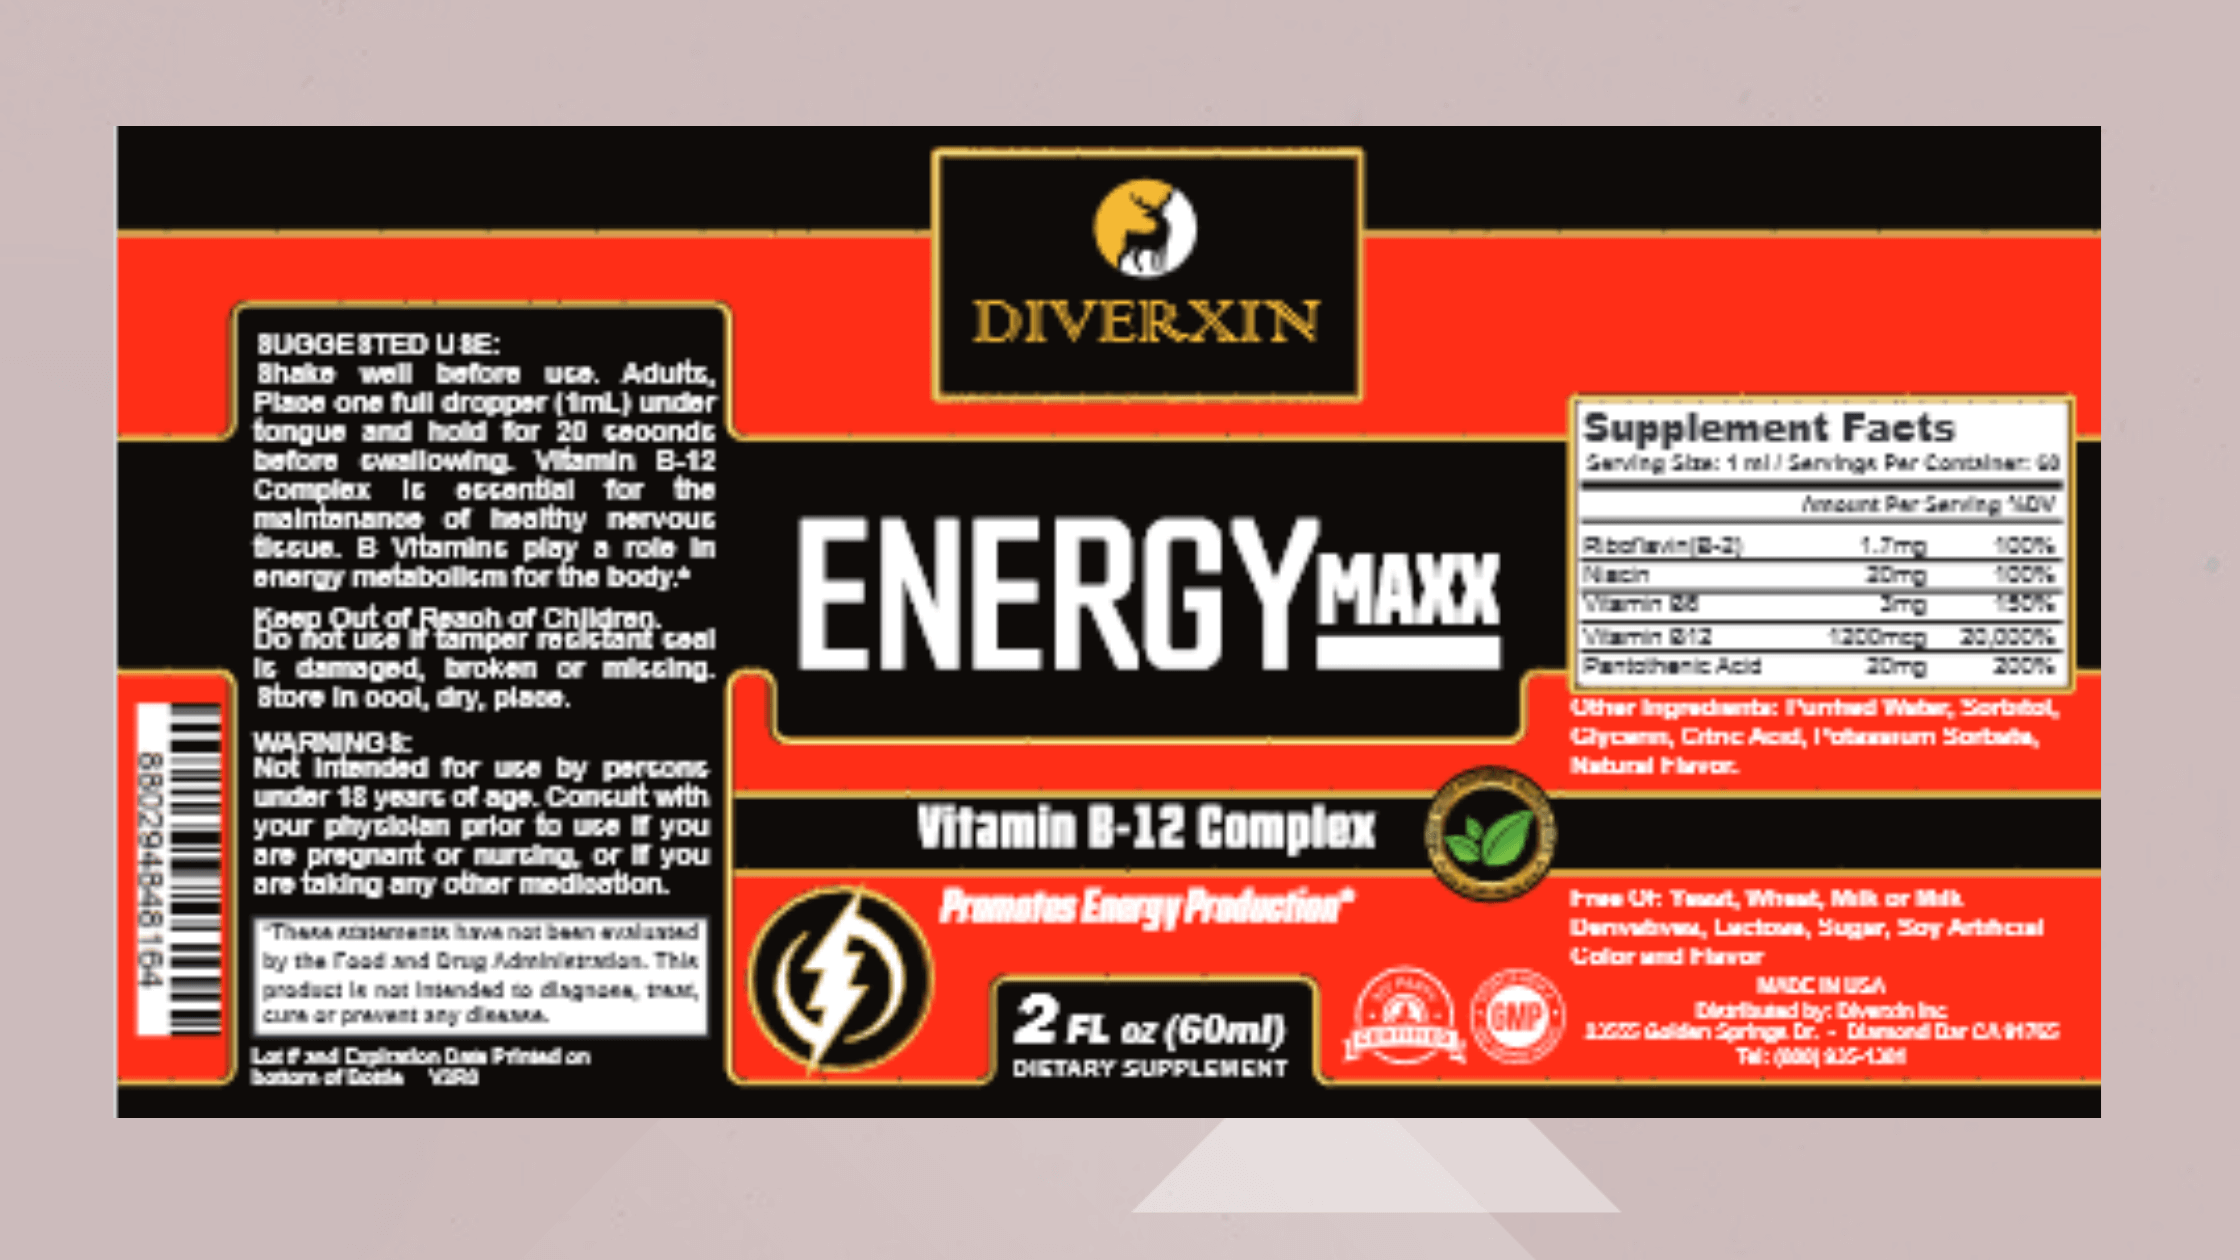 Diverxin Energy Maxx Dosage